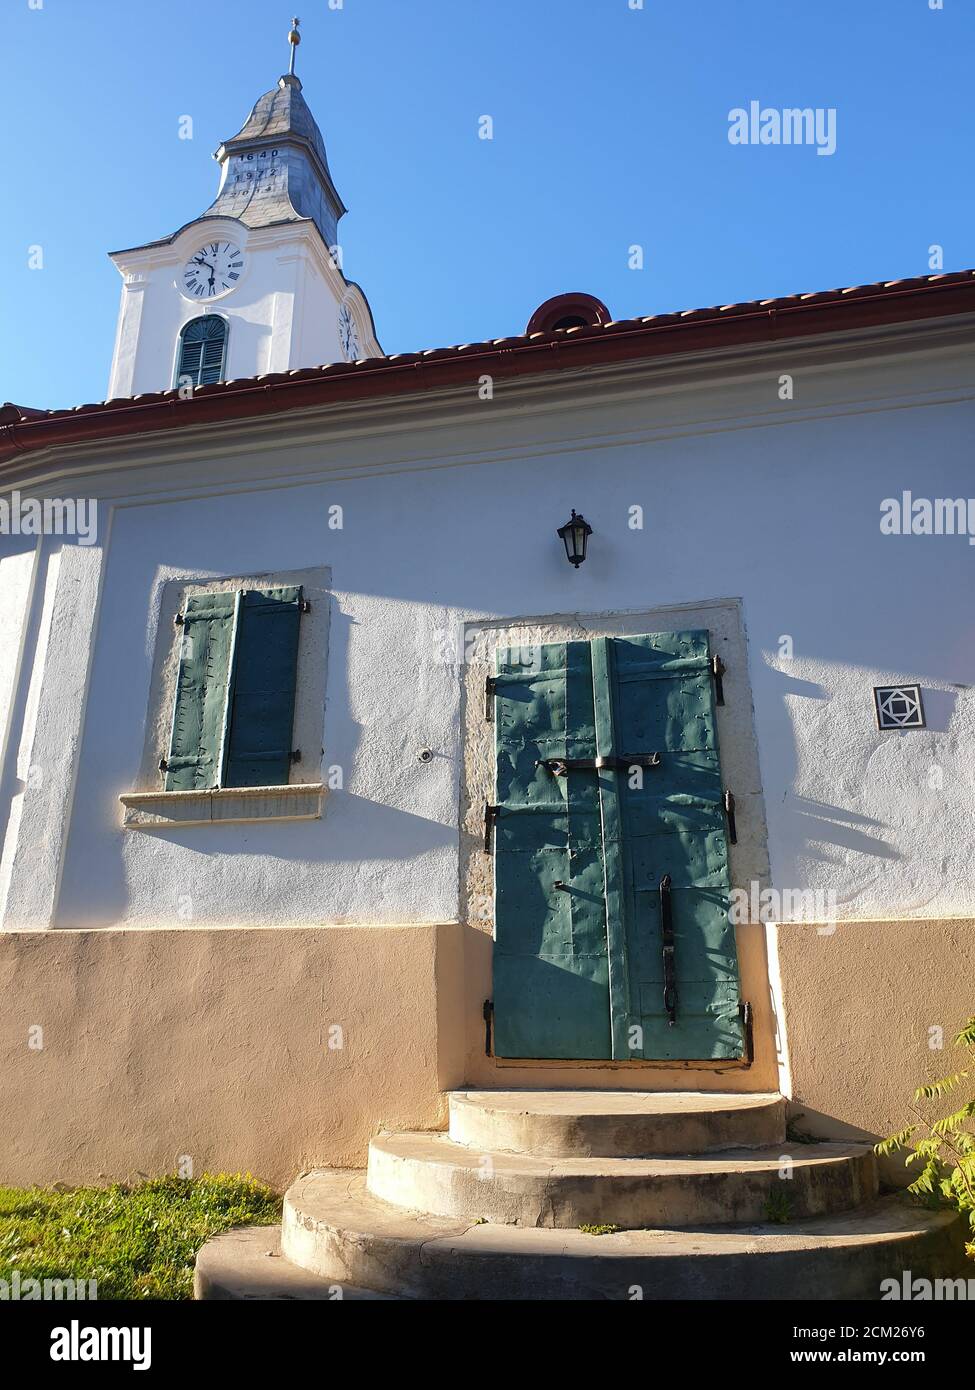 Closed metallic window shutters and gate in Rimetea, Romania. Architecture detail of unitarian church in the village of Rimetea, Torocko, Alba, Romani Stock Photo